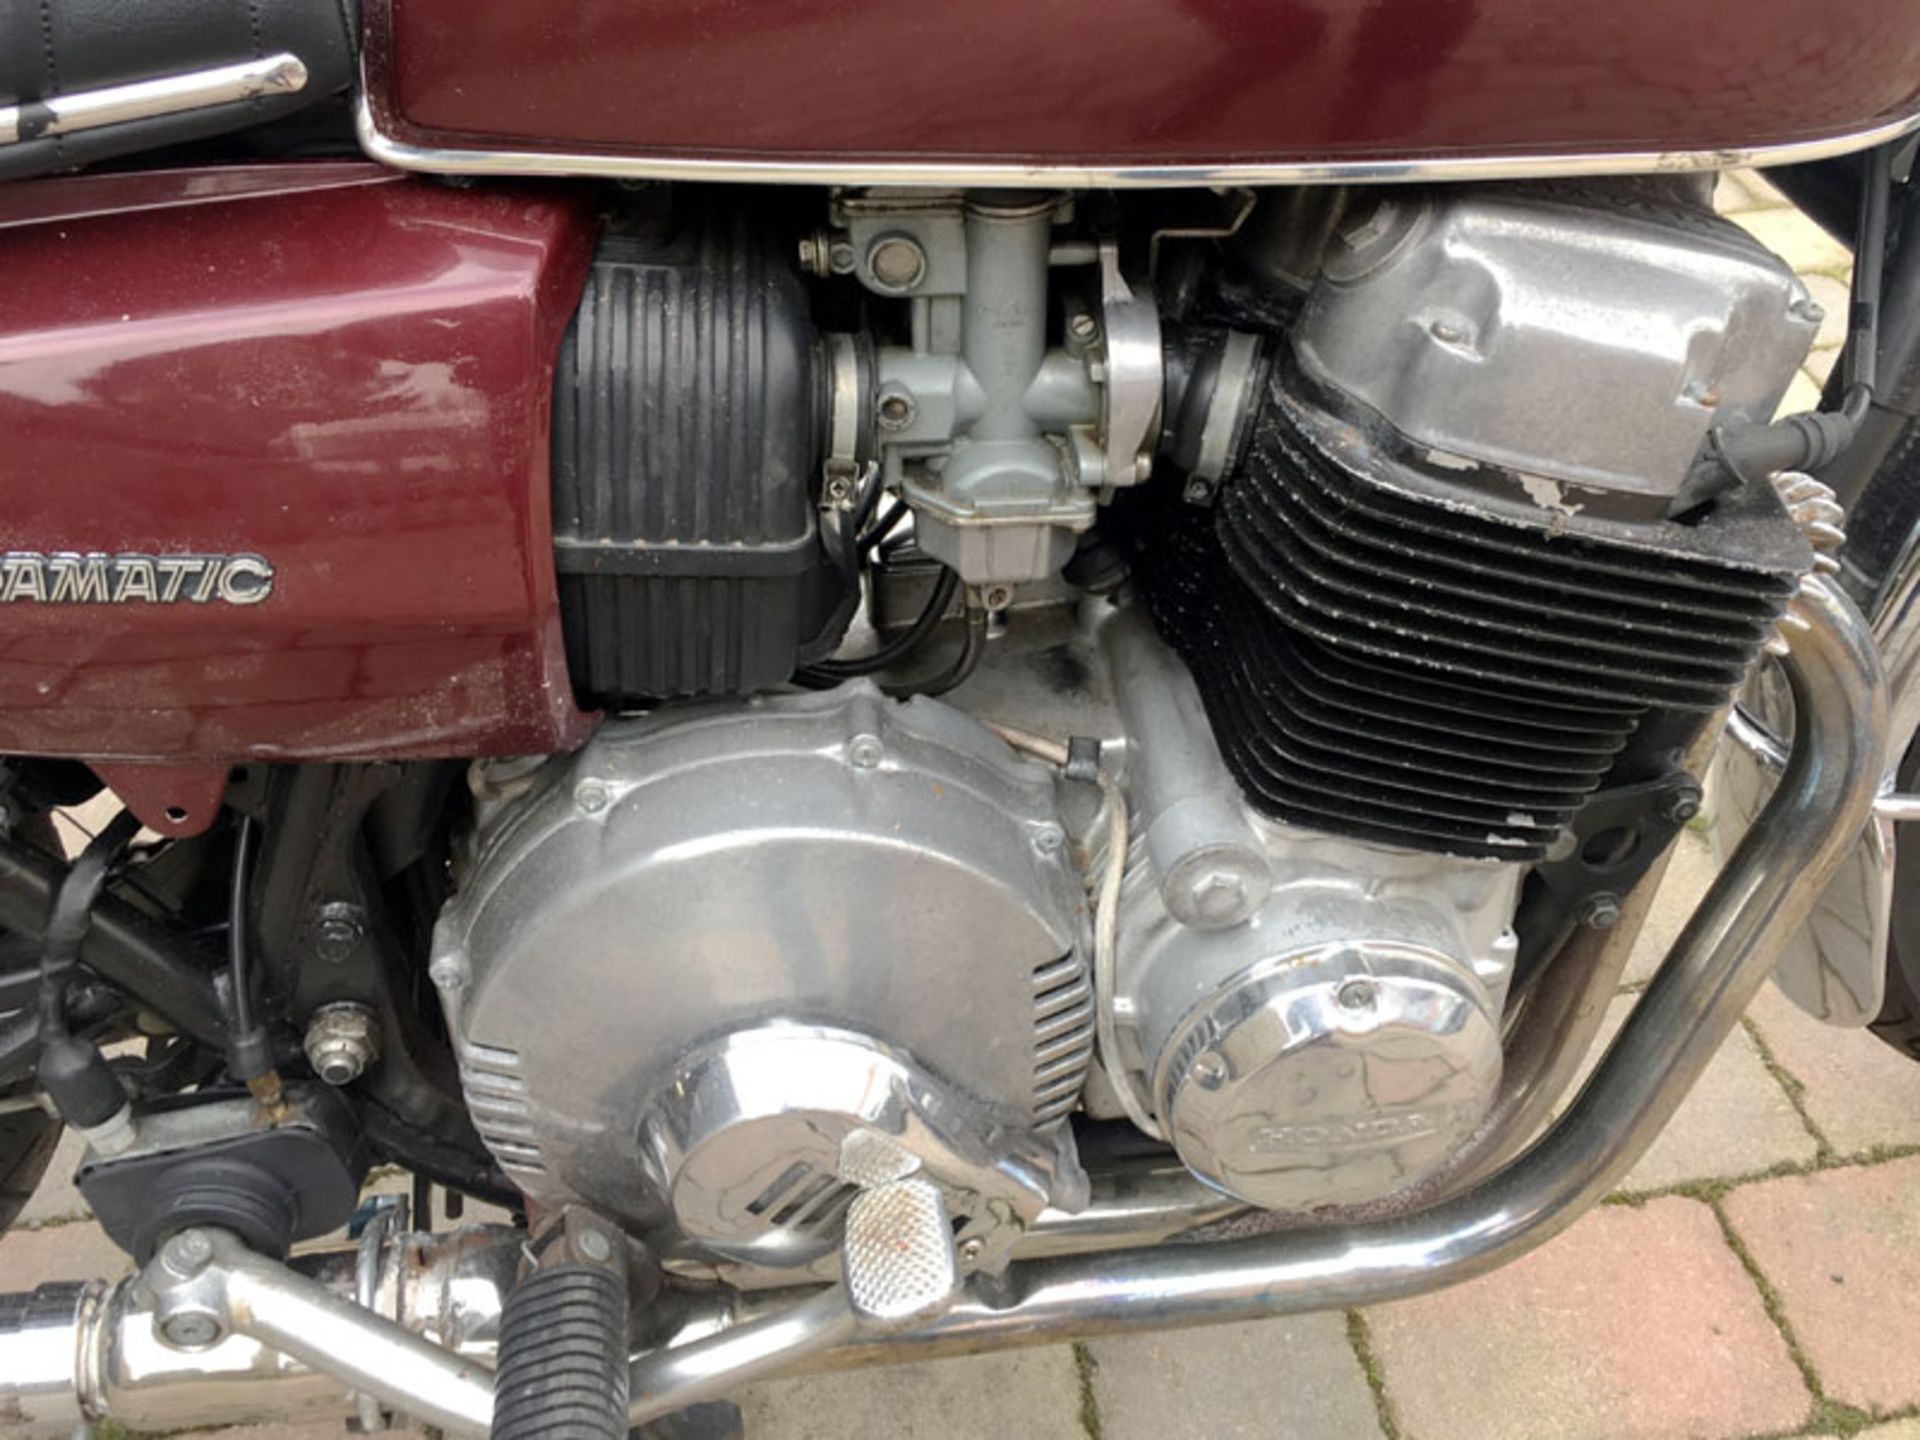 1976 Honda CB750A - Image 3 of 6